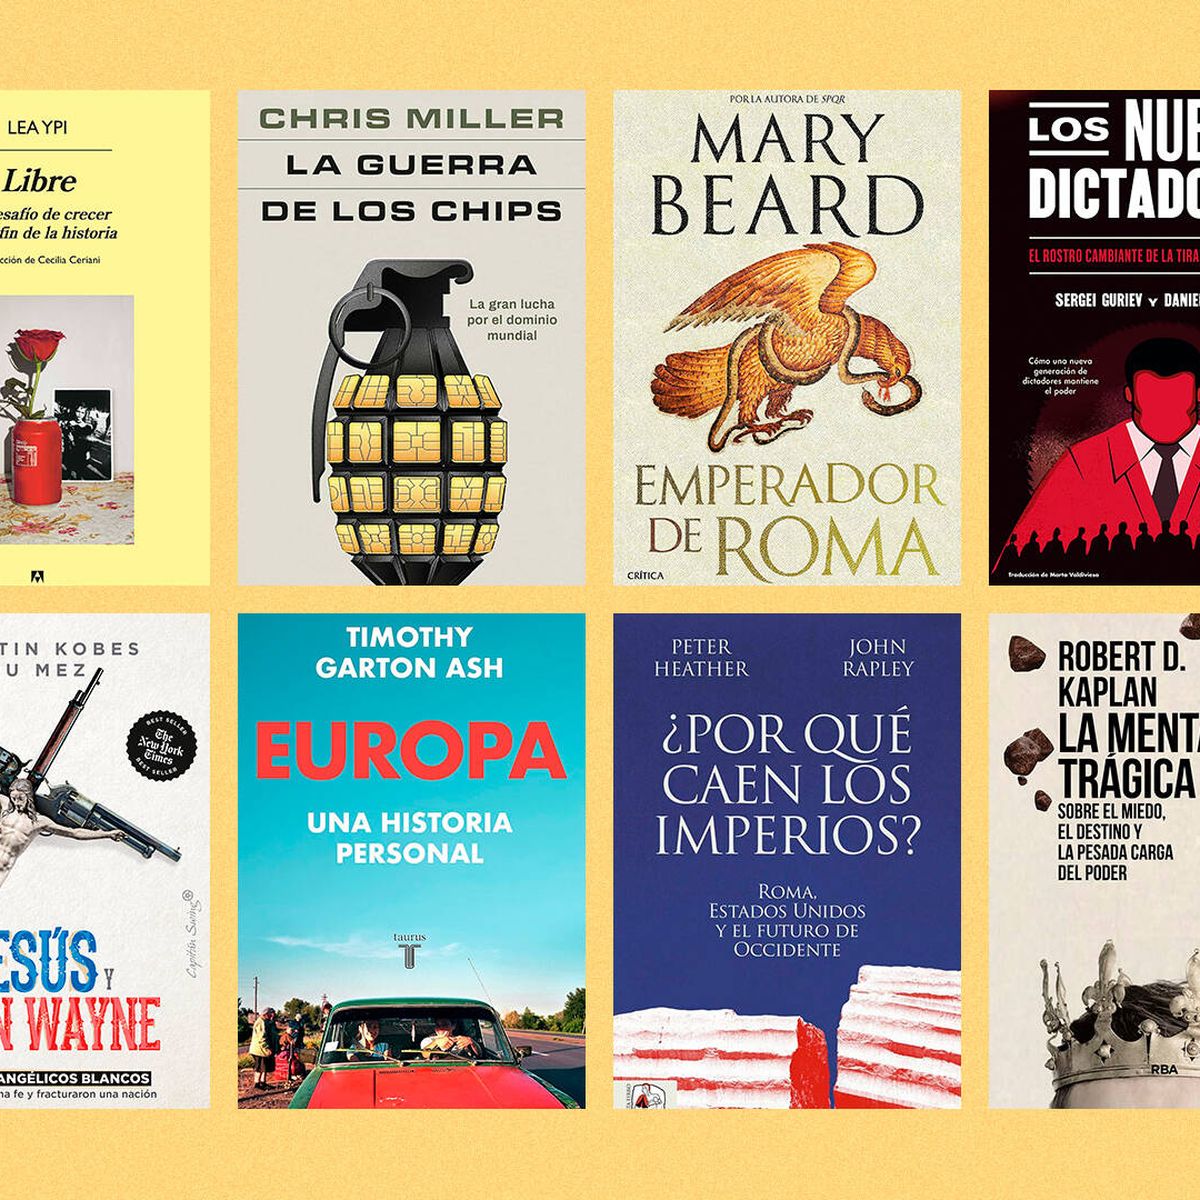 Los mejores libros electrónicos de 2023 - libroswiki